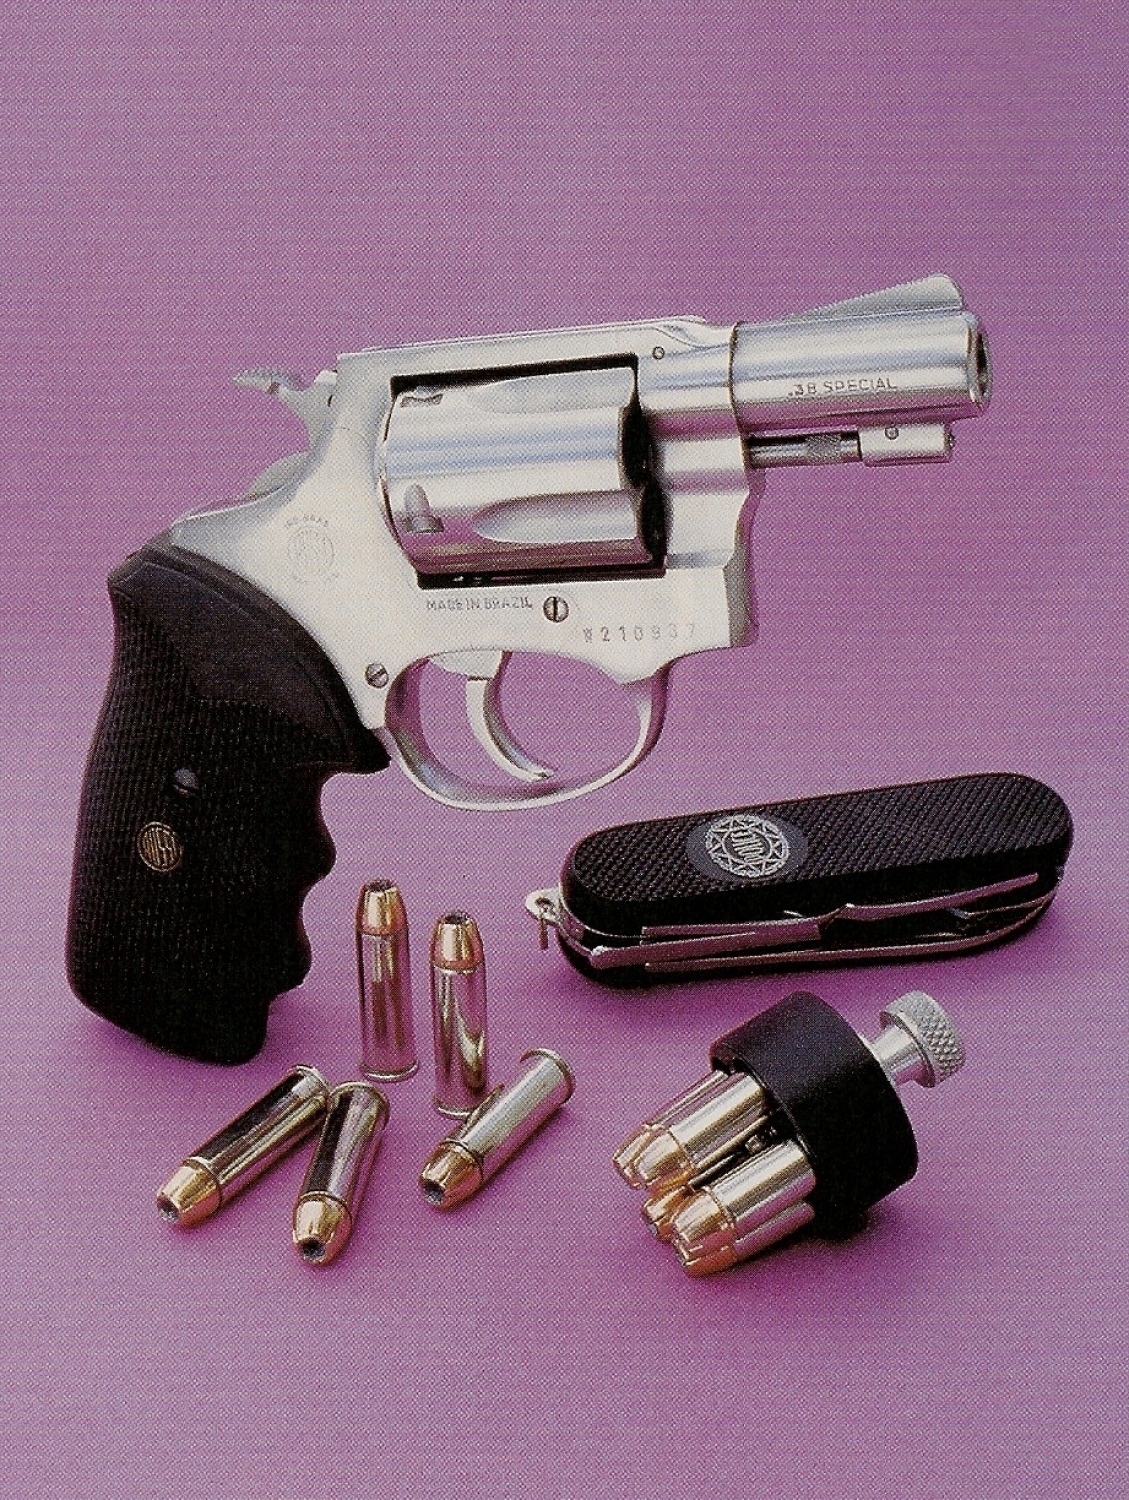 Le revolver Rossi modèle 87, à cinq coups en calibre .38 Special, est accompagné ici par un Speed-loader HKS n°36 et par un couteau pliant multi-usages Aïtor Police. L’utilisation de douilles nickelées élimine le risque de collage dans la chambre au moment de l’éjection.